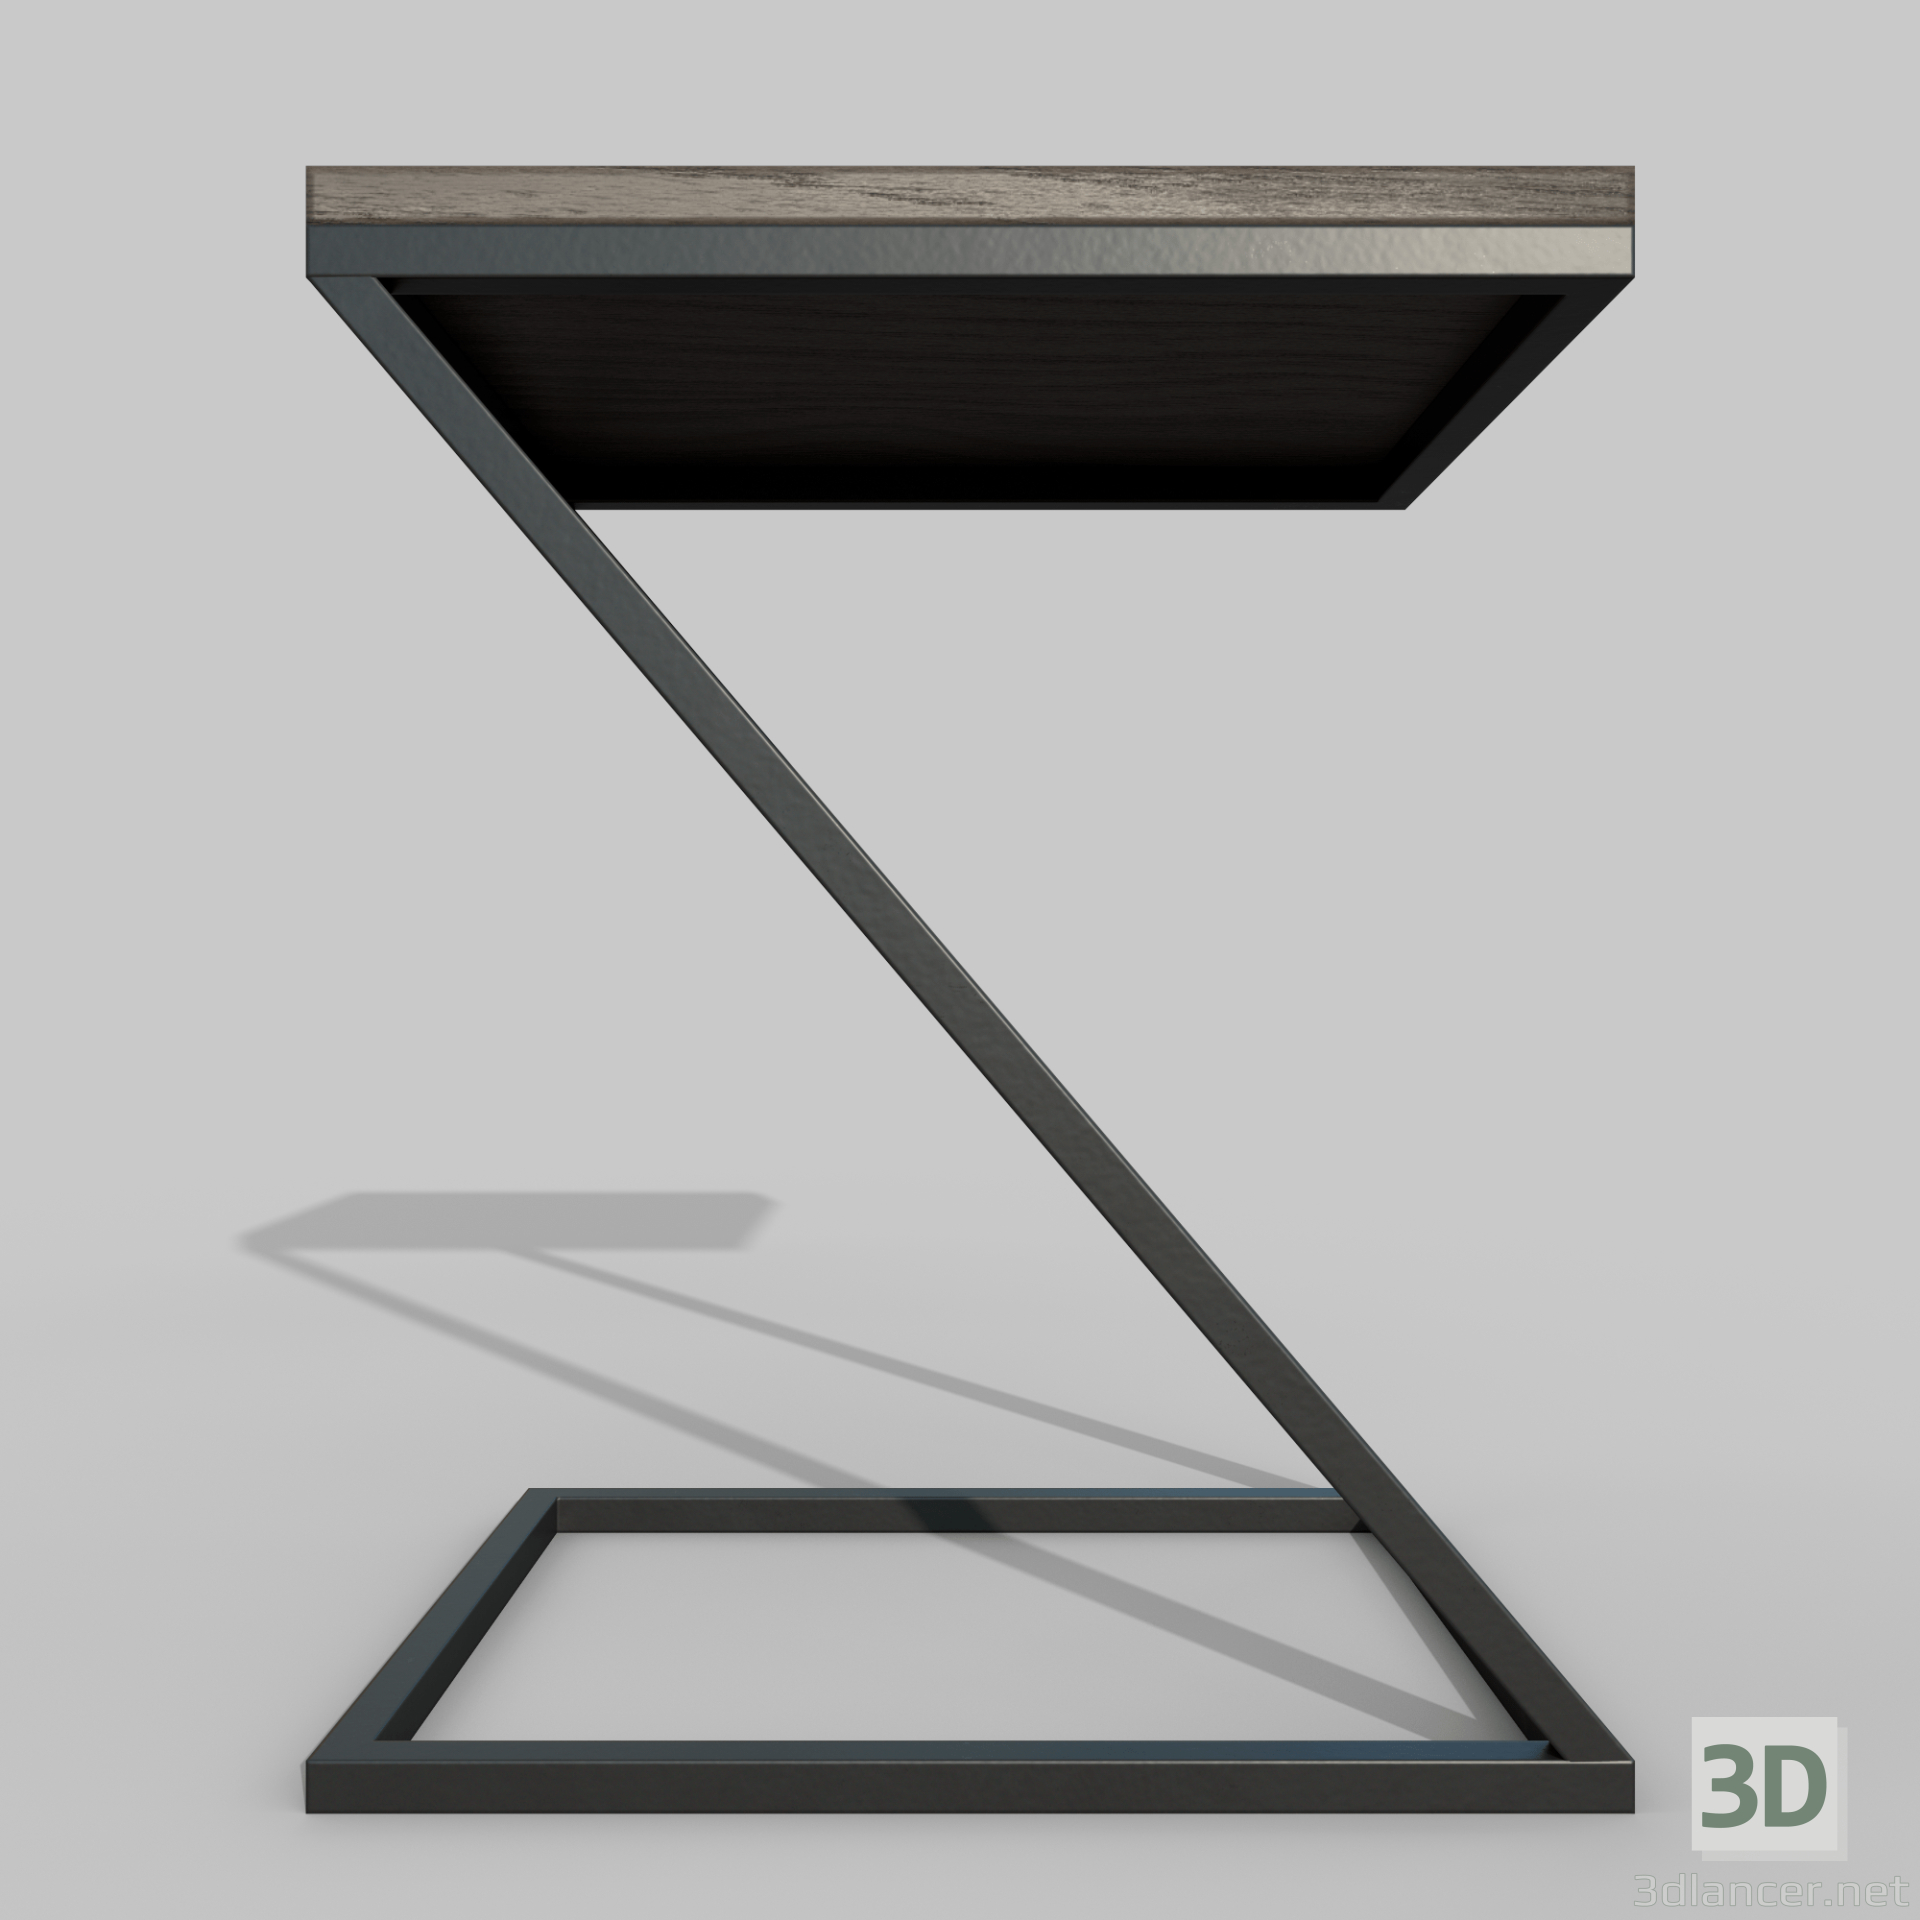 Stuhlkonzept 3D-Modell kaufen - Rendern